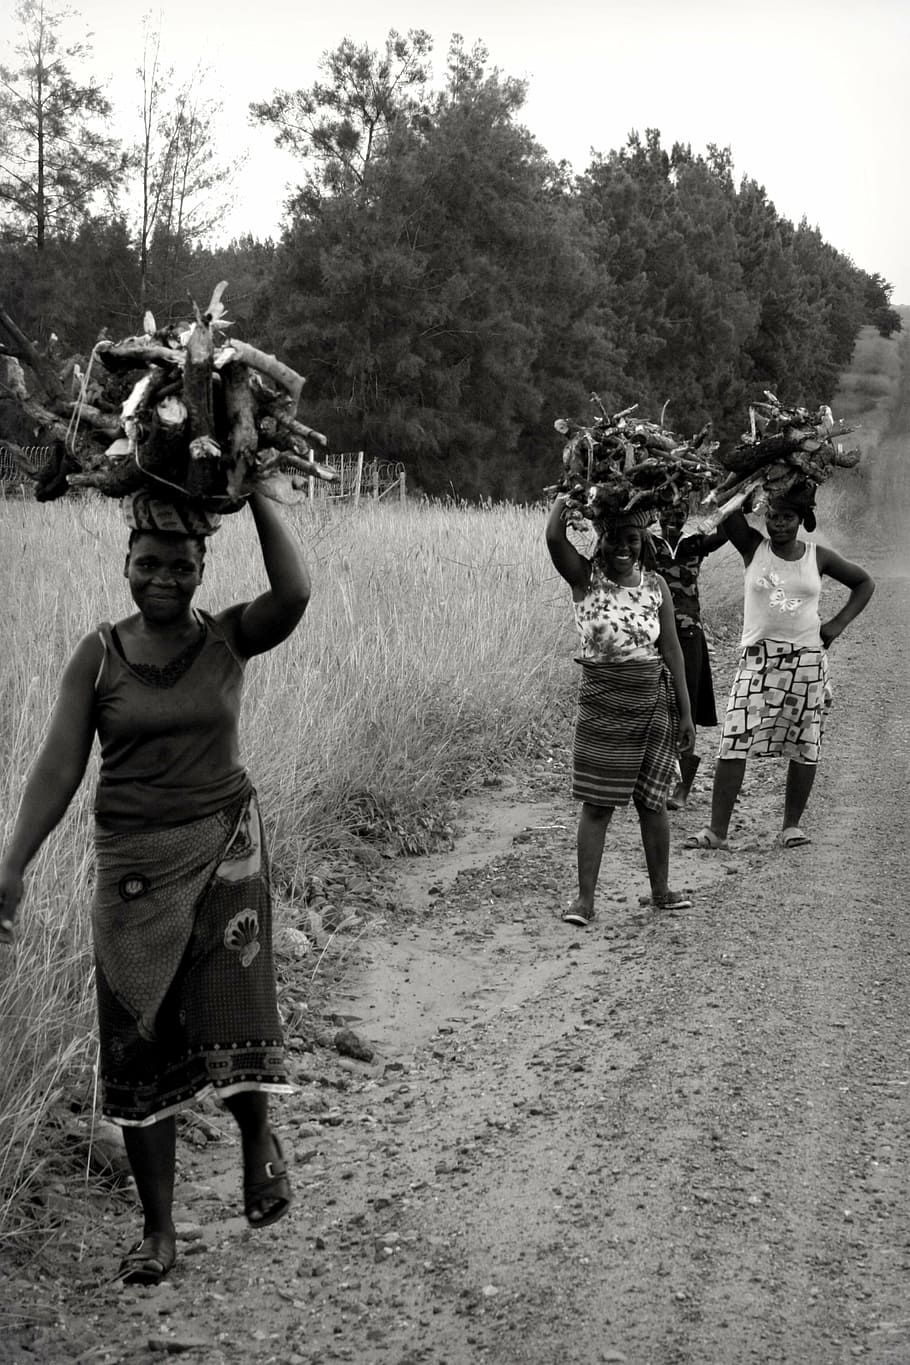 グレースケールの写真, 4, 女性, 運ぶ, 薪, アフリカ, 南アフリカ, アフリカの女性, 木を運ぶ女性, 黒と白